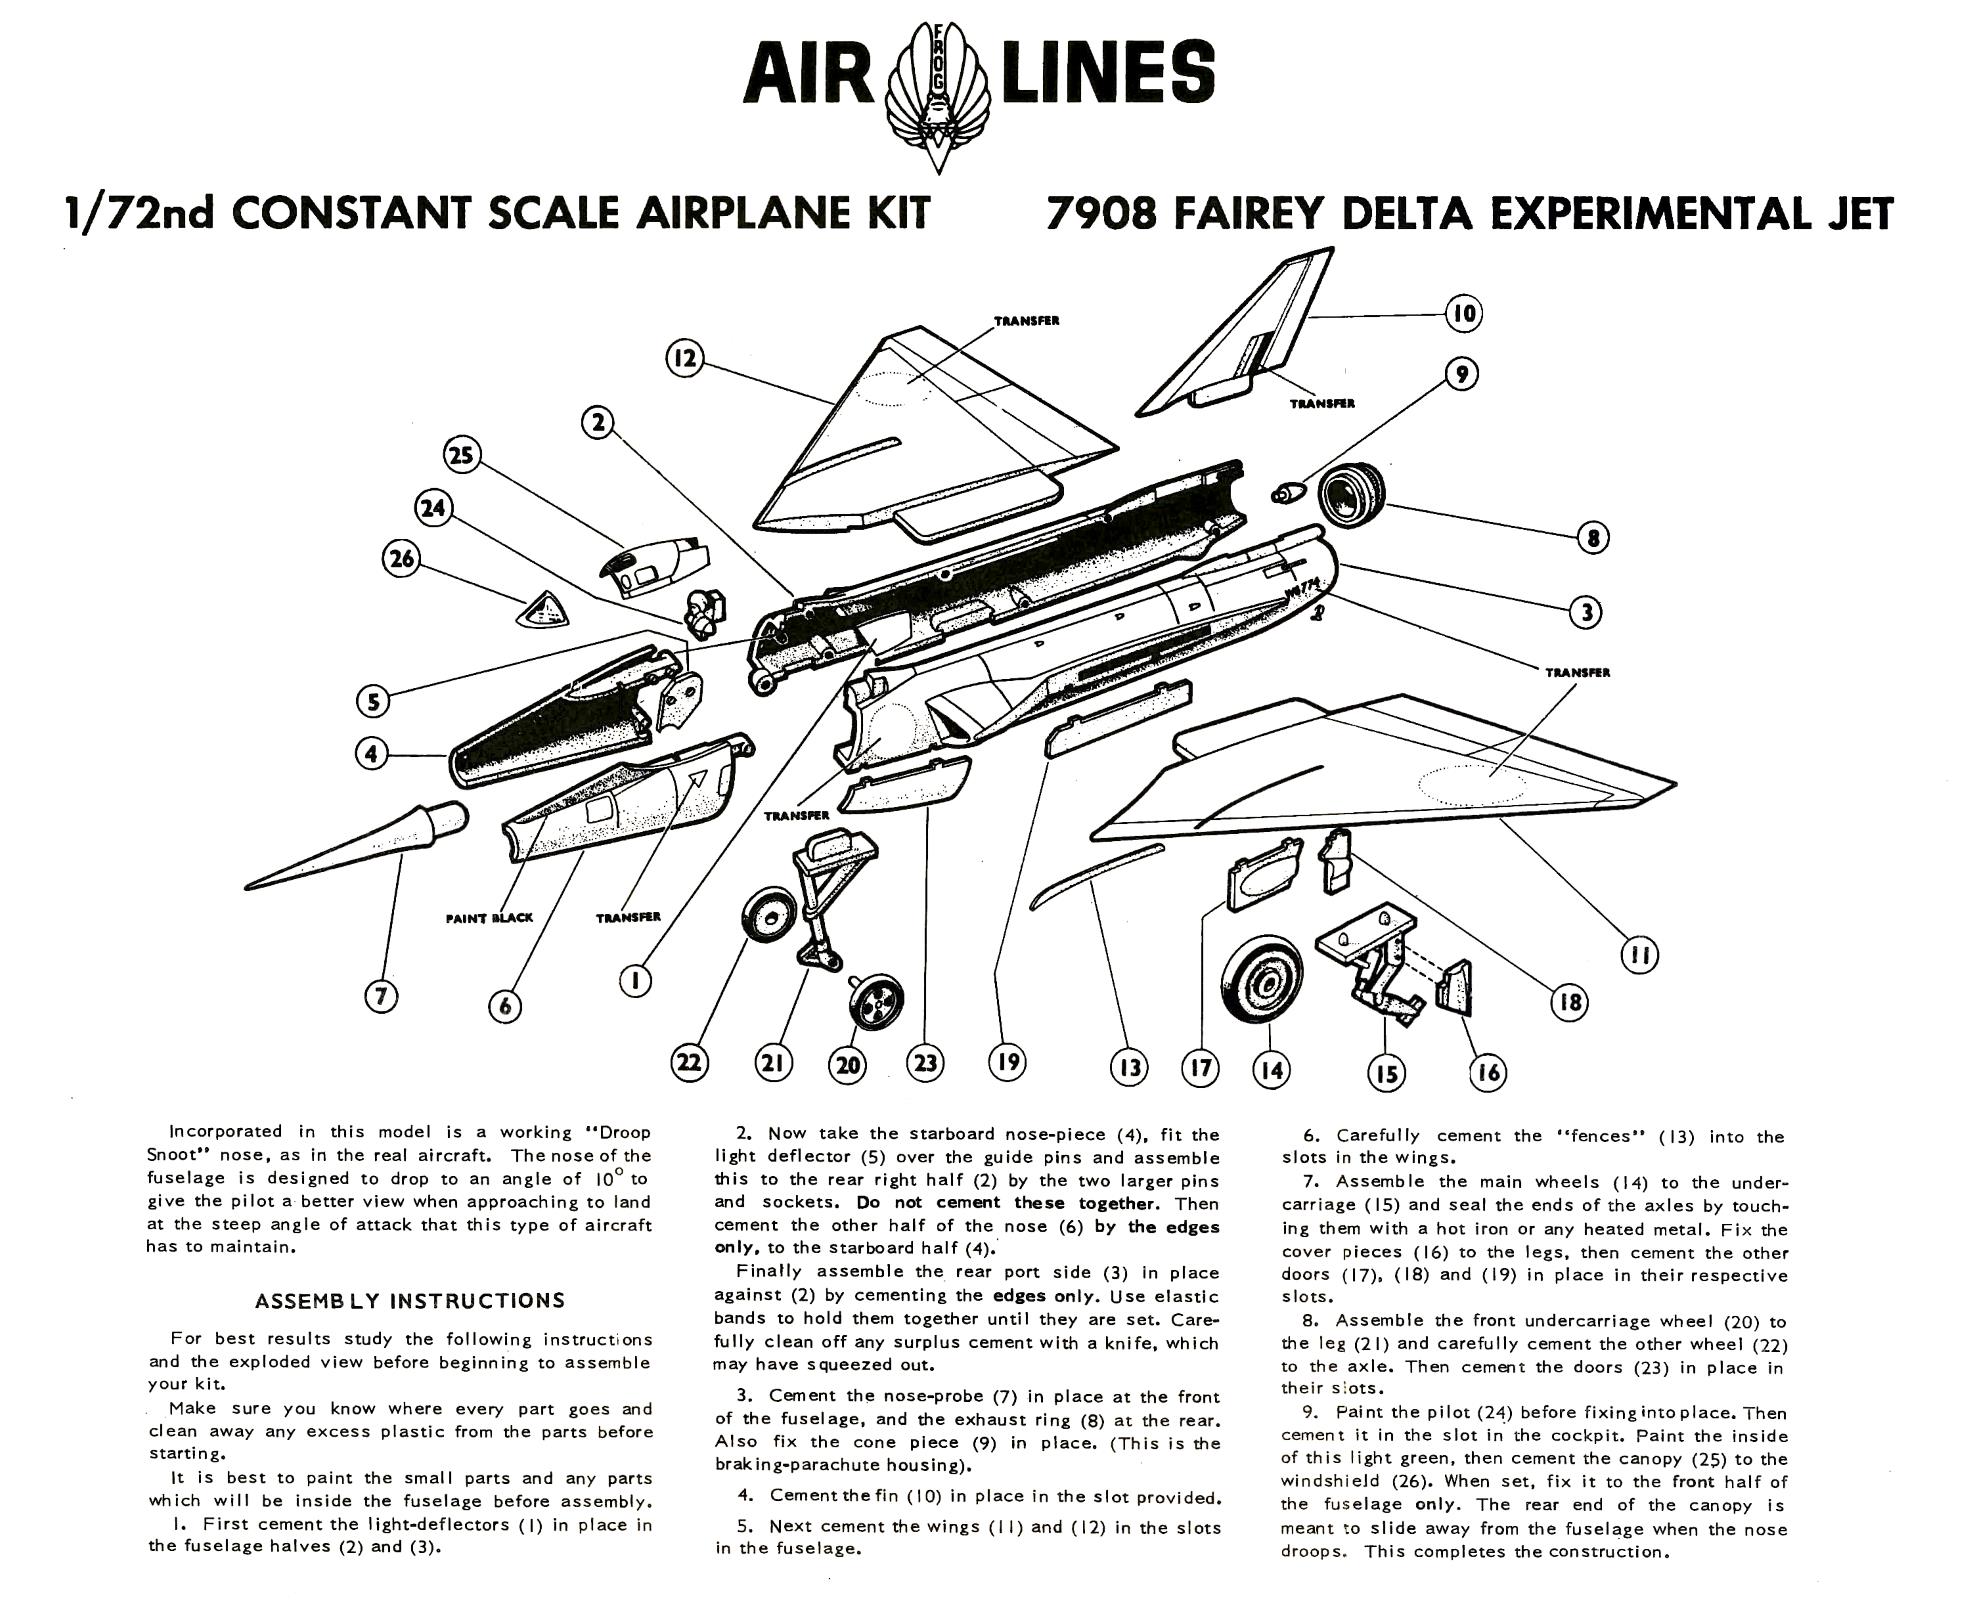 Инструкция по сборке Air Lines 7908 Fairey Delta 2